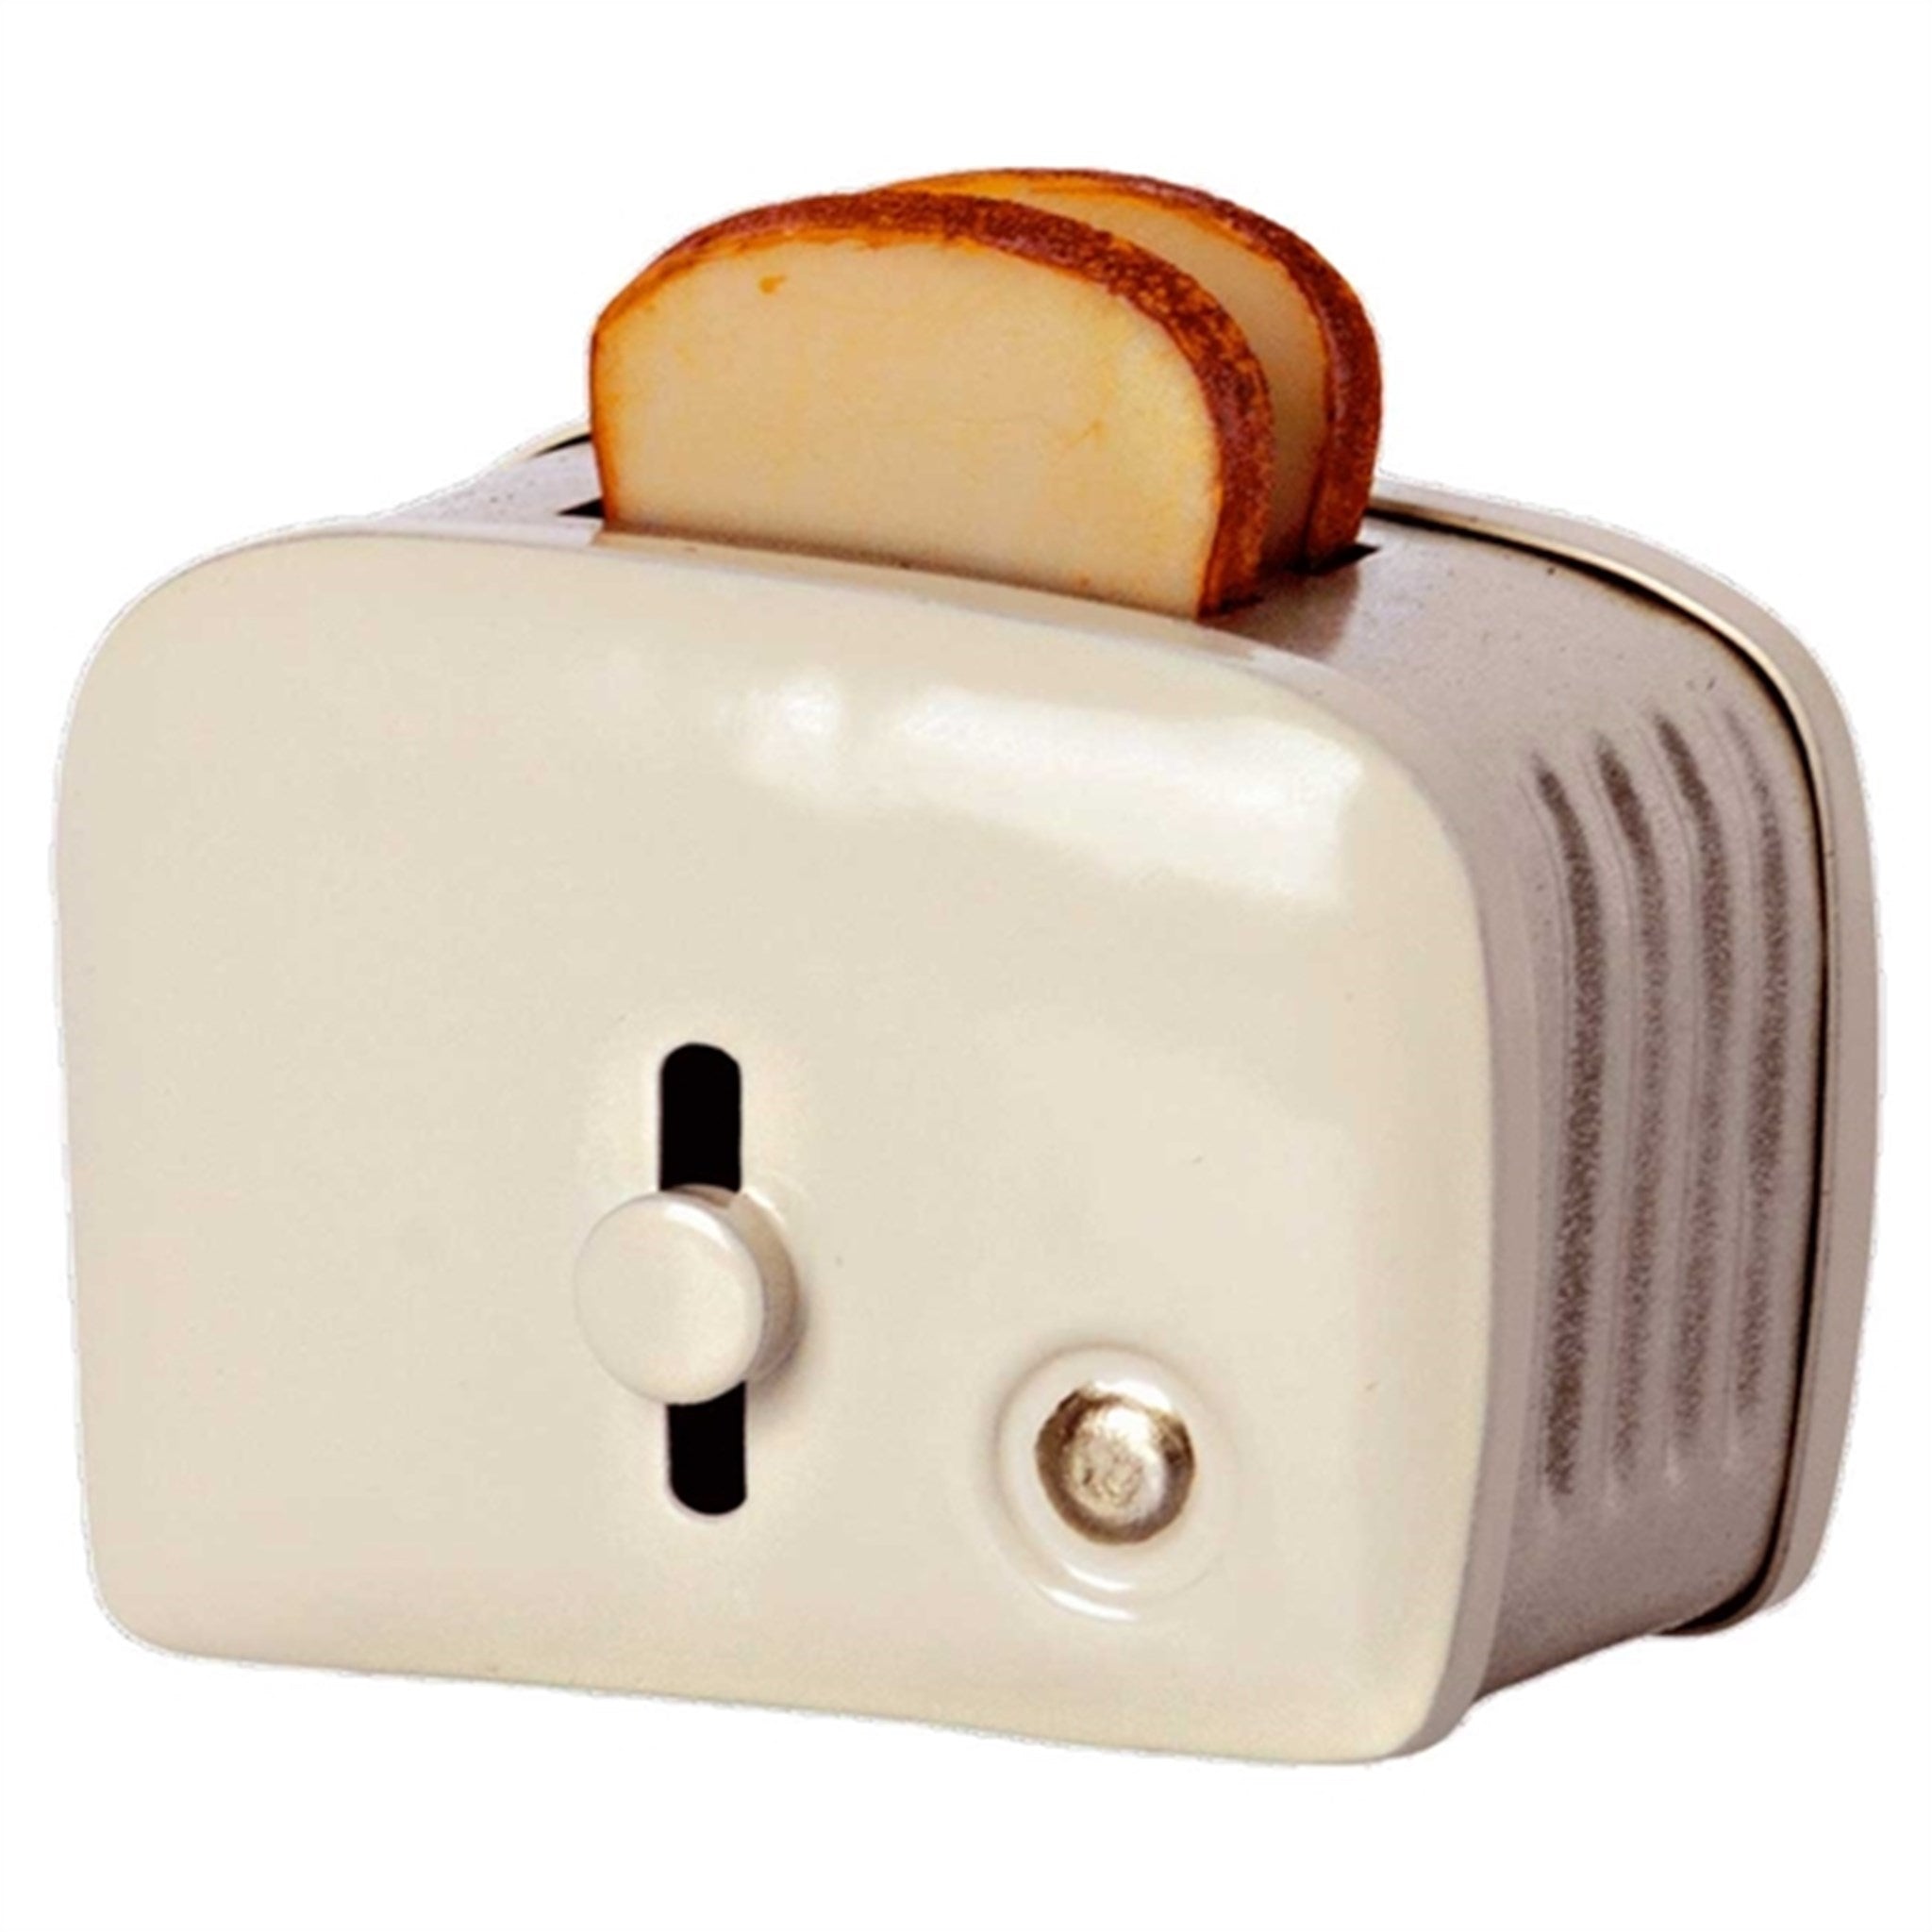 Maileg Miniature Toaster Offwhite